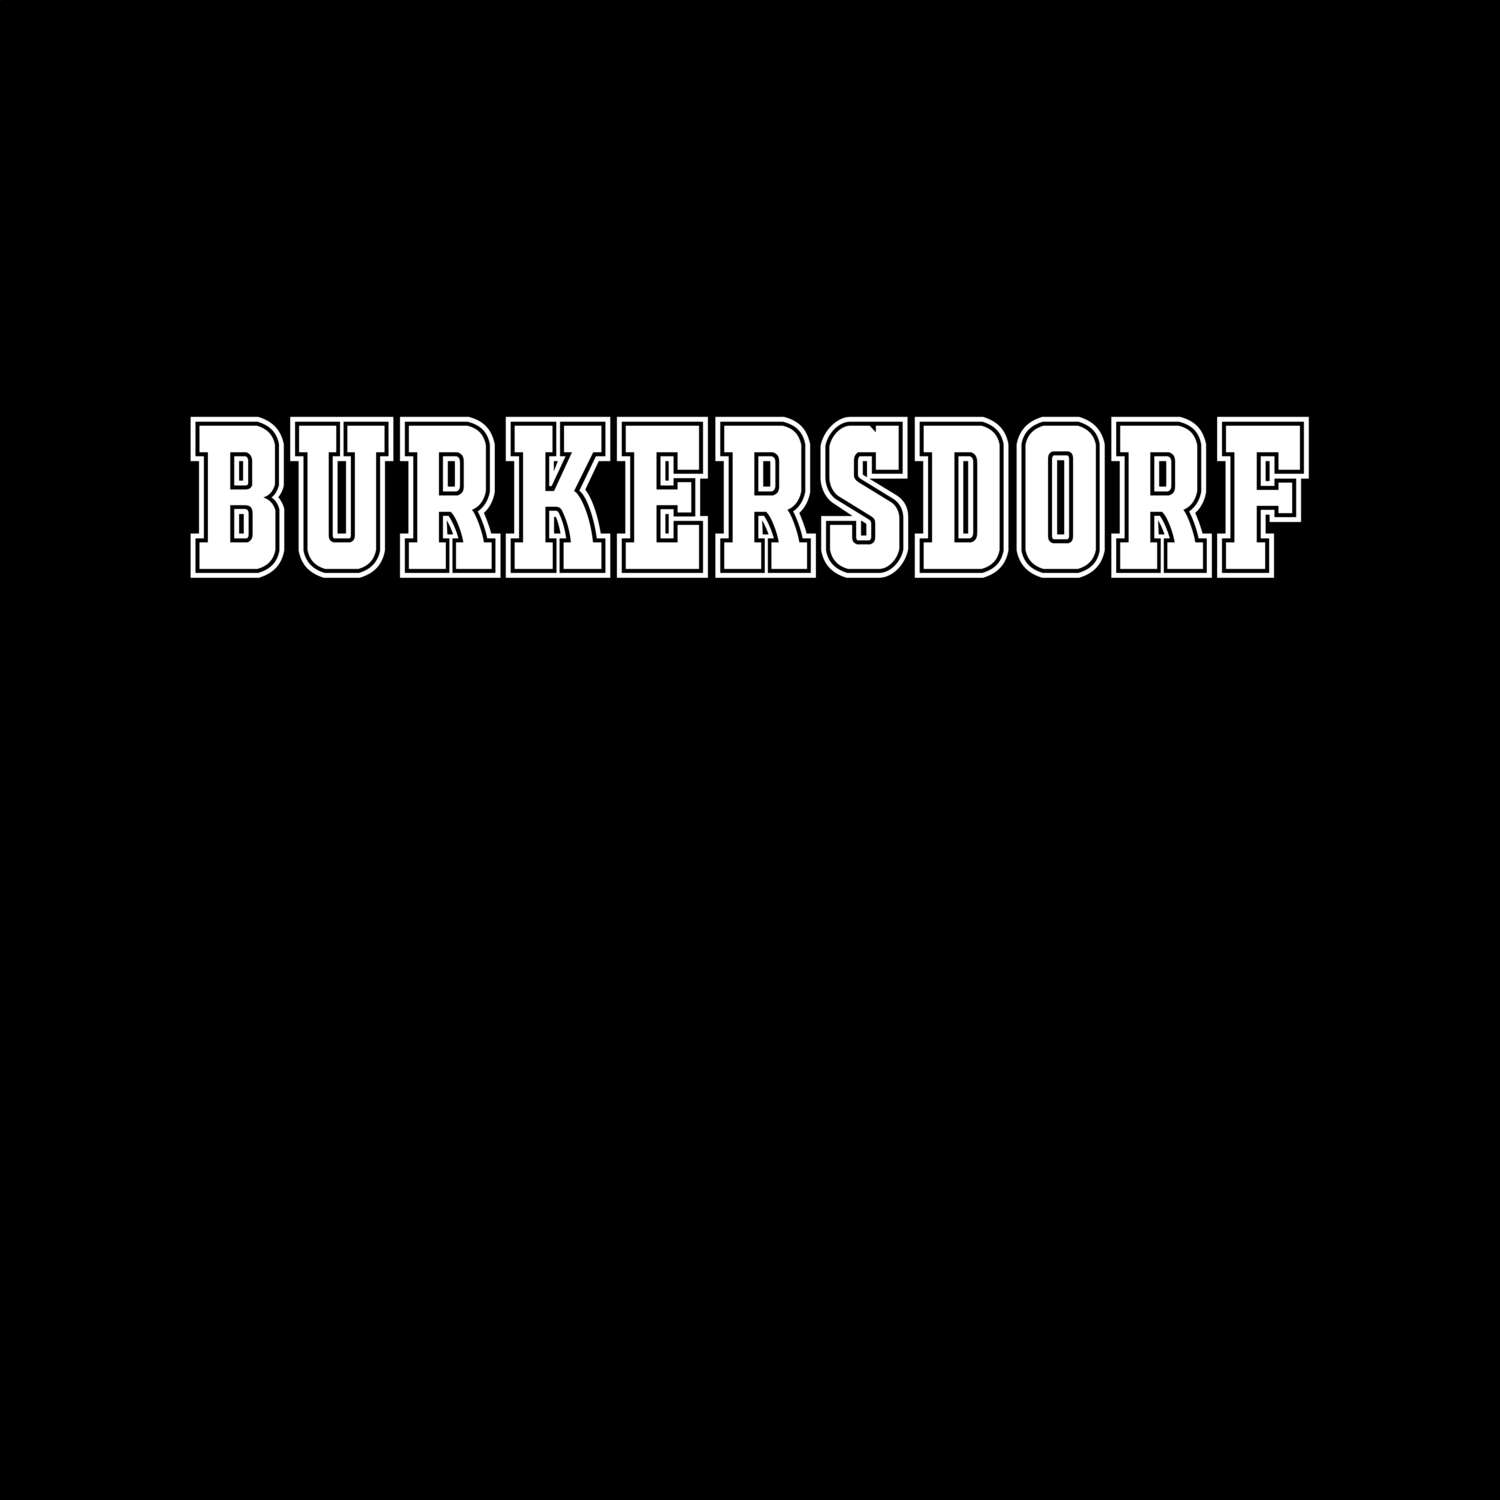 Burkersdorf T-Shirt »Classic«